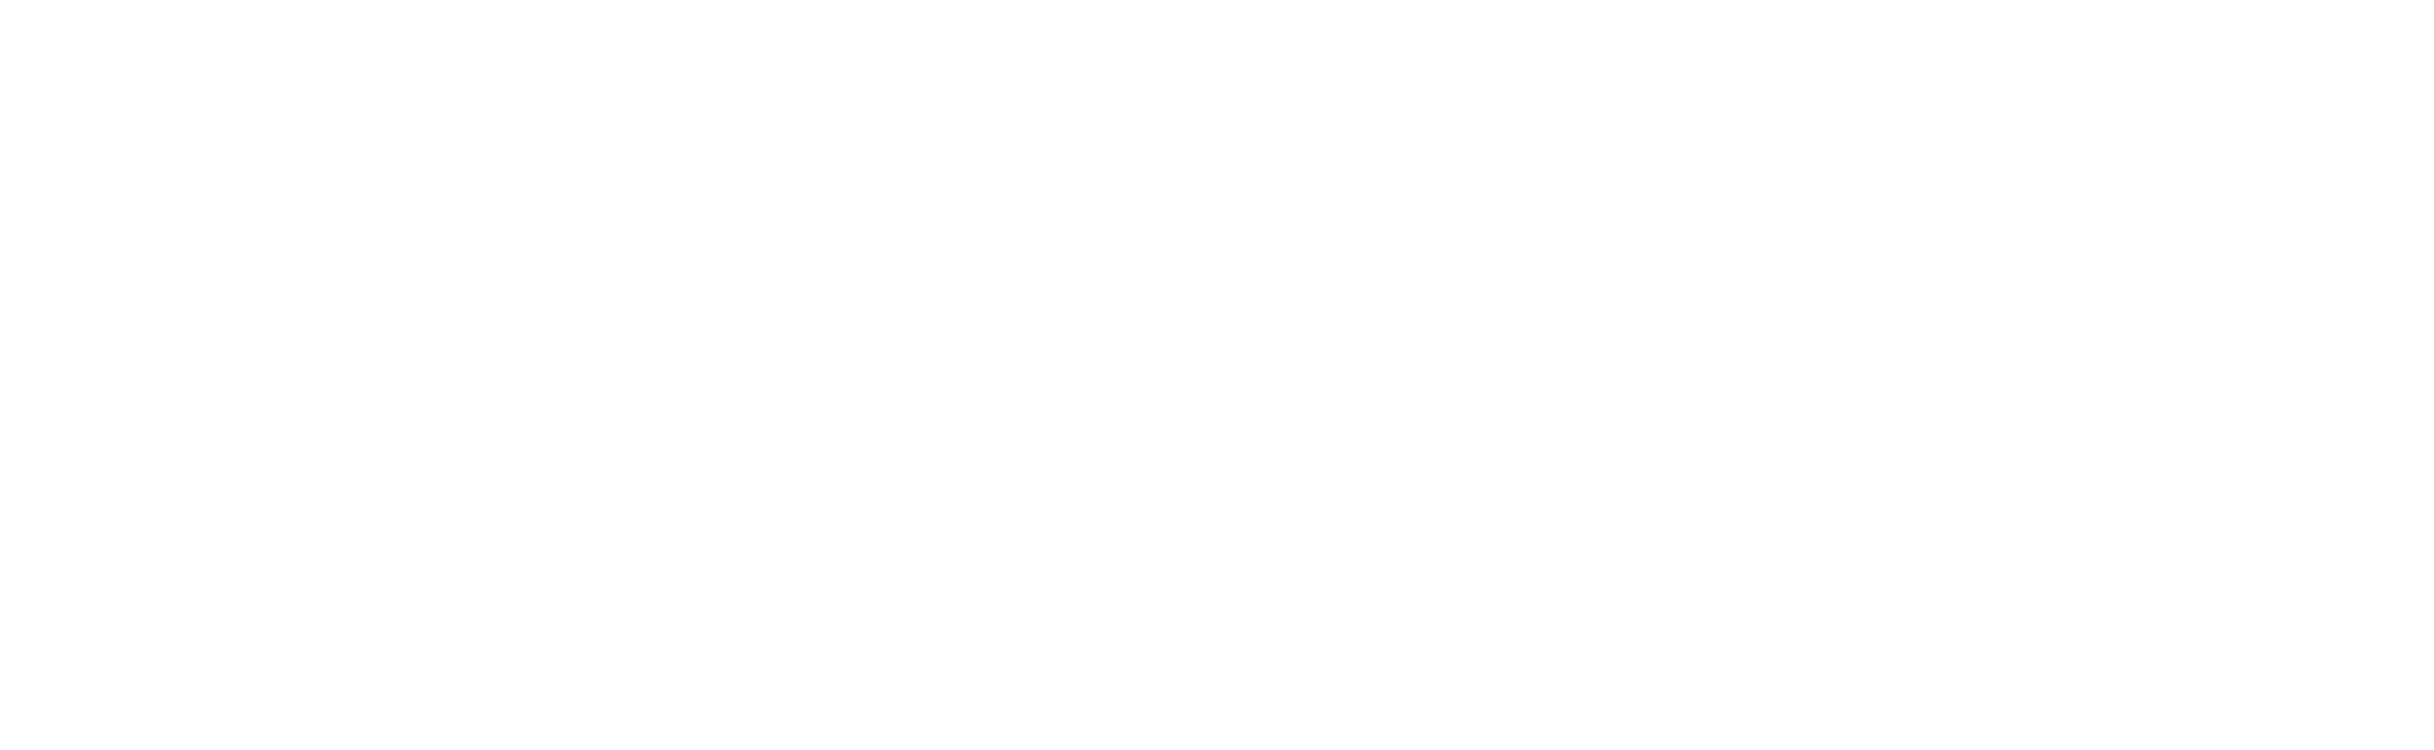 The Bold Look of KOHLER Logo